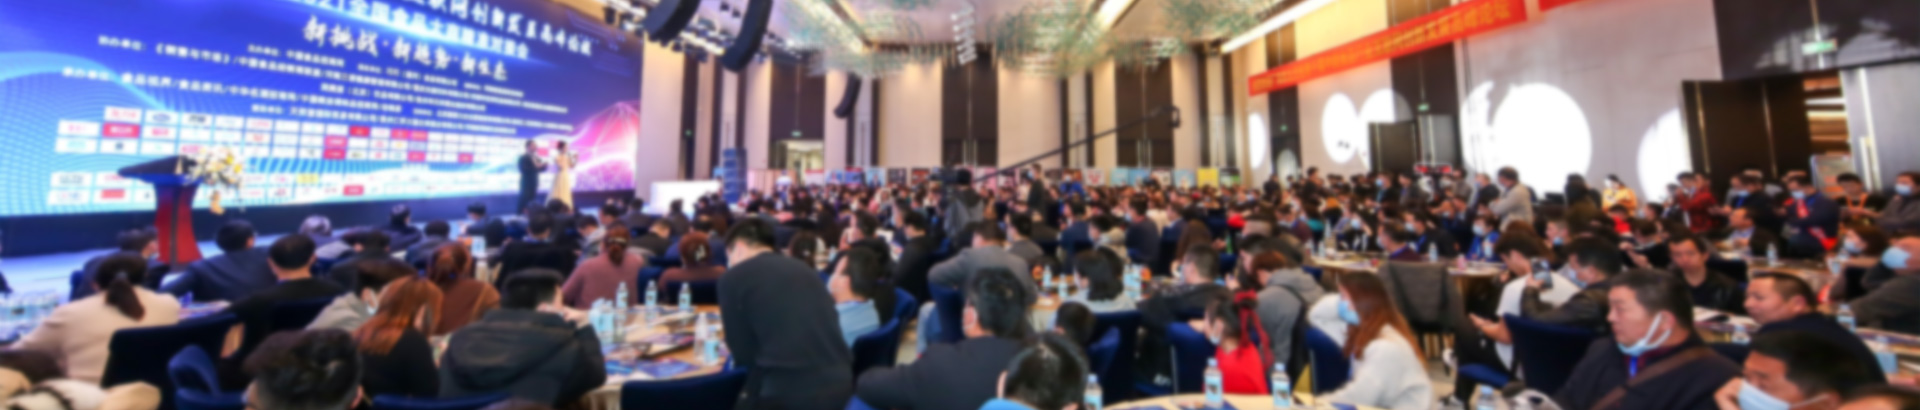 2025中国高端饮品博览会